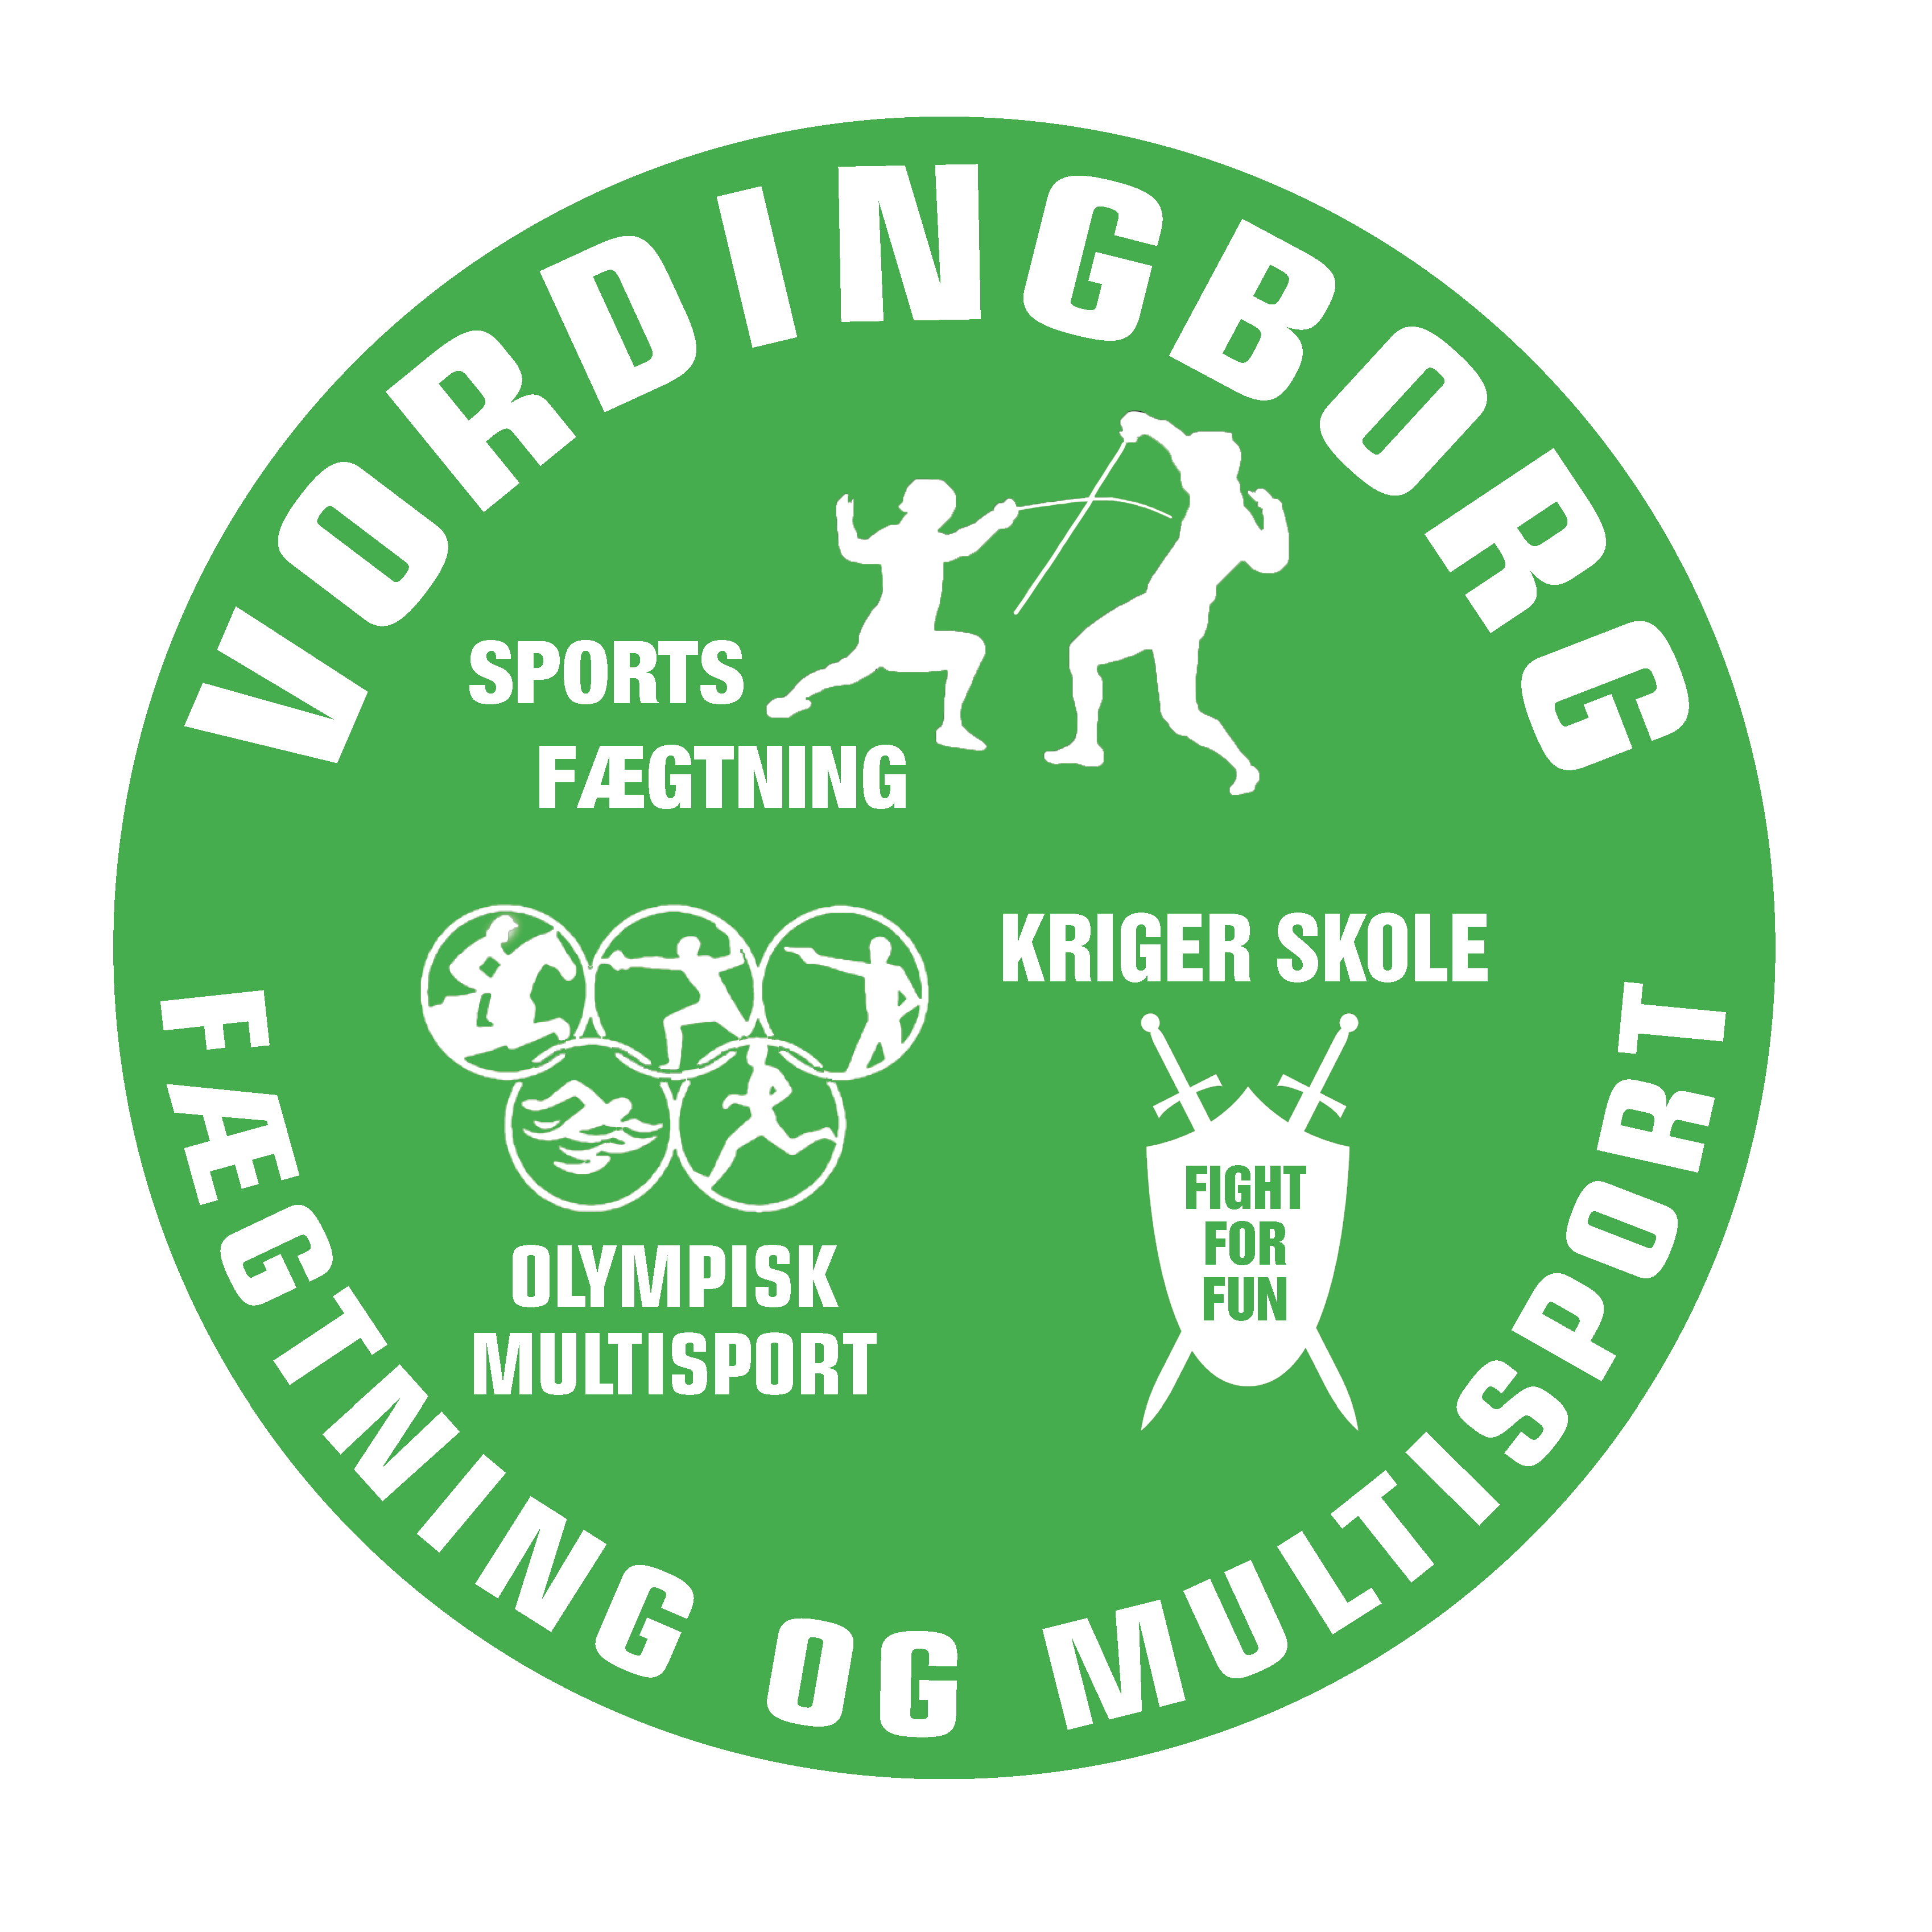 Vordingborg Fægtning og Multisport (VFM)